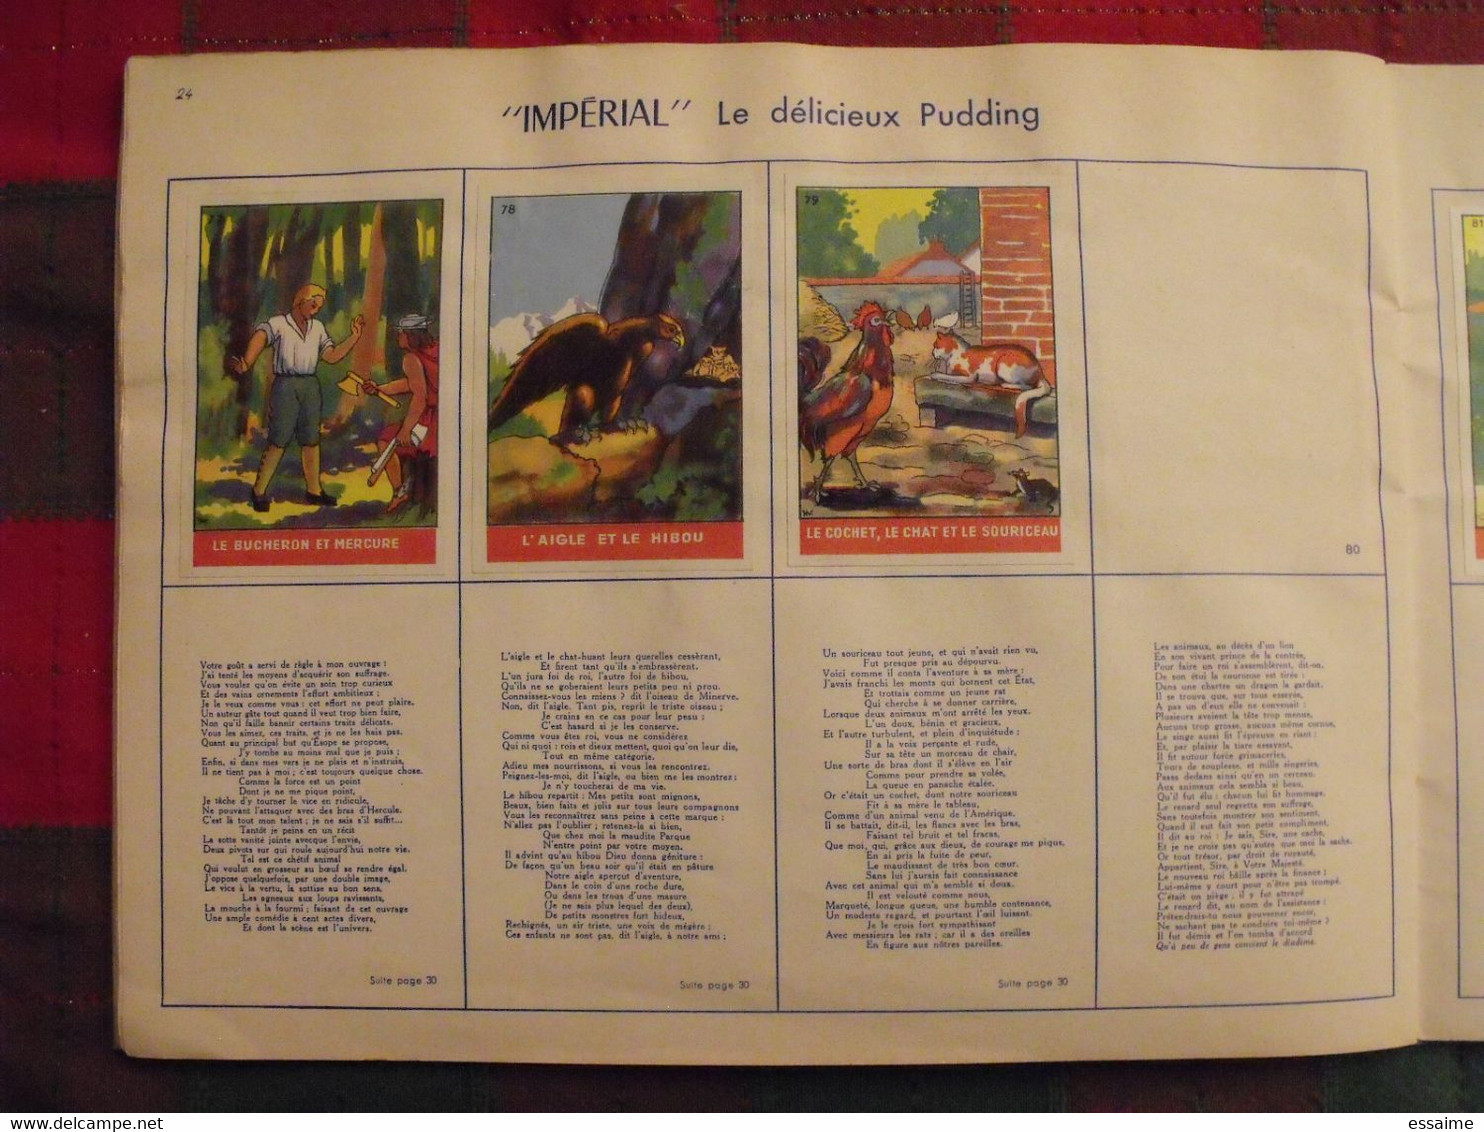 album d'images Fables de La Fontaine. flan entremets Impérial. contient 74/96 images. vers 1960. lot 3